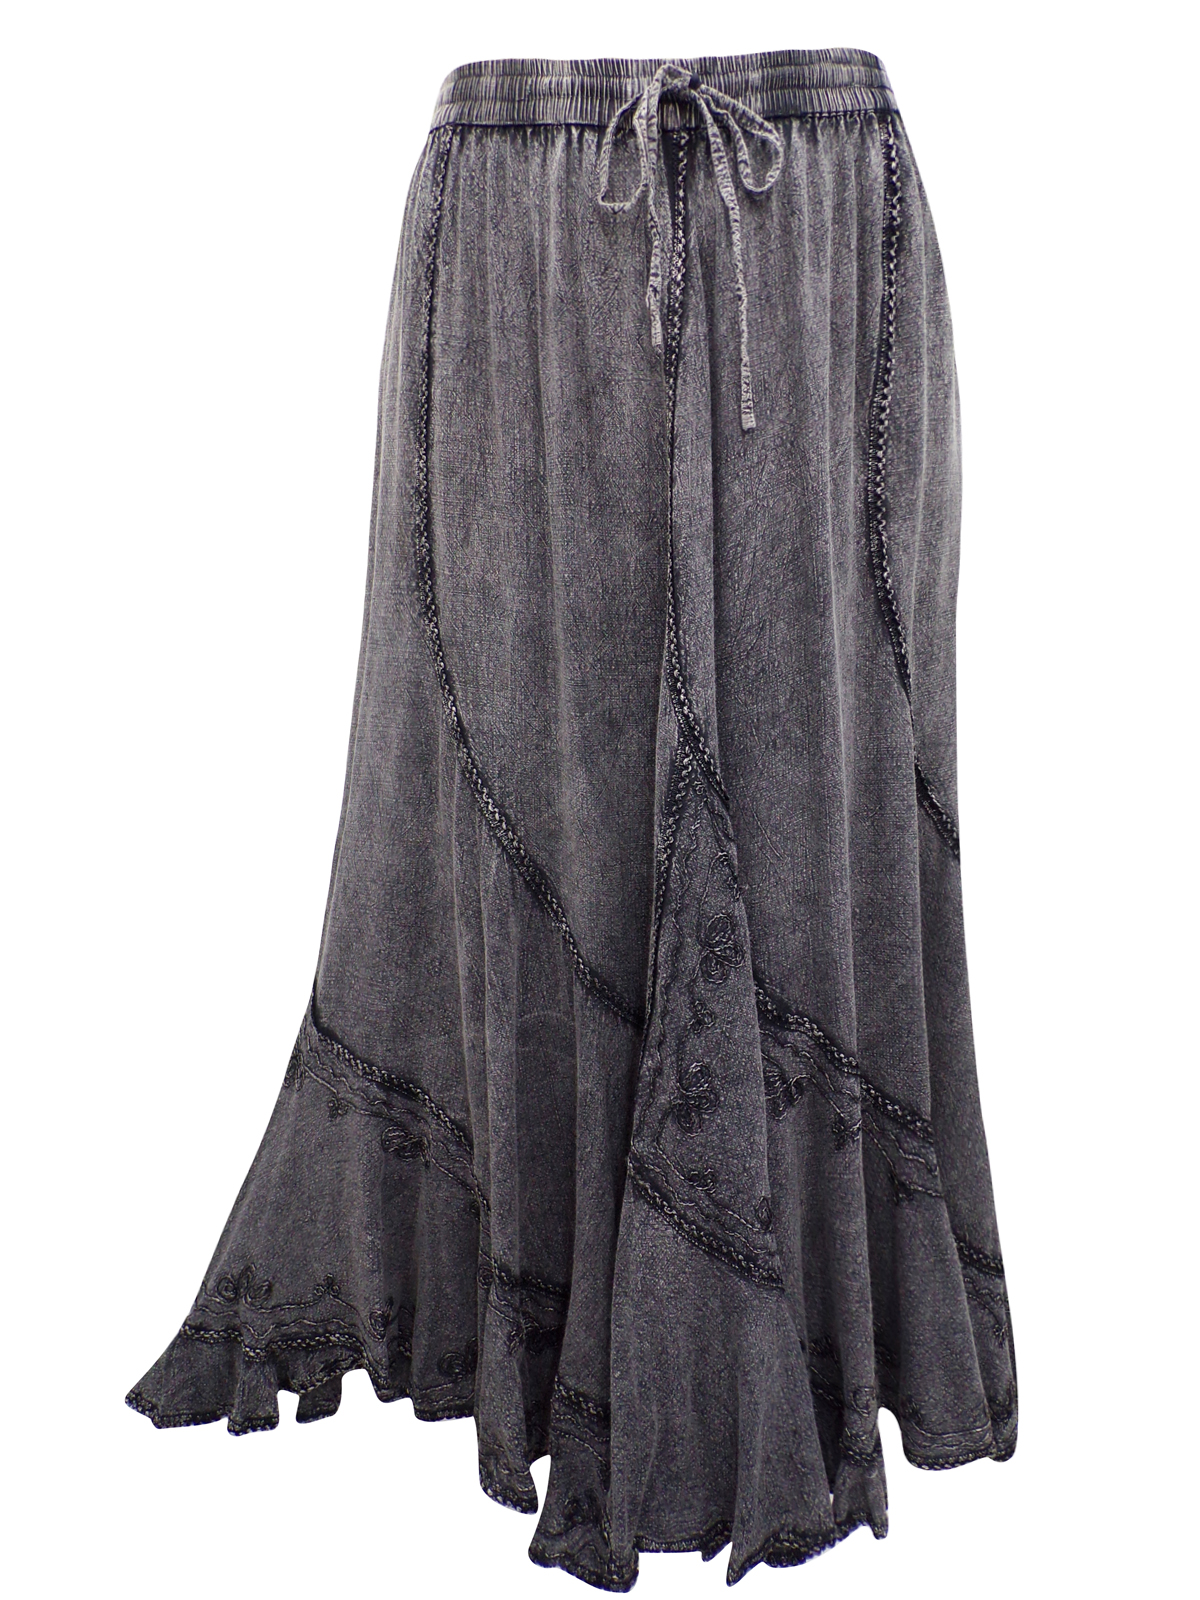 eaonplus BLACK Scalloped Renaissance Maxi Skirt - Plus Size 14/16 to 34/36